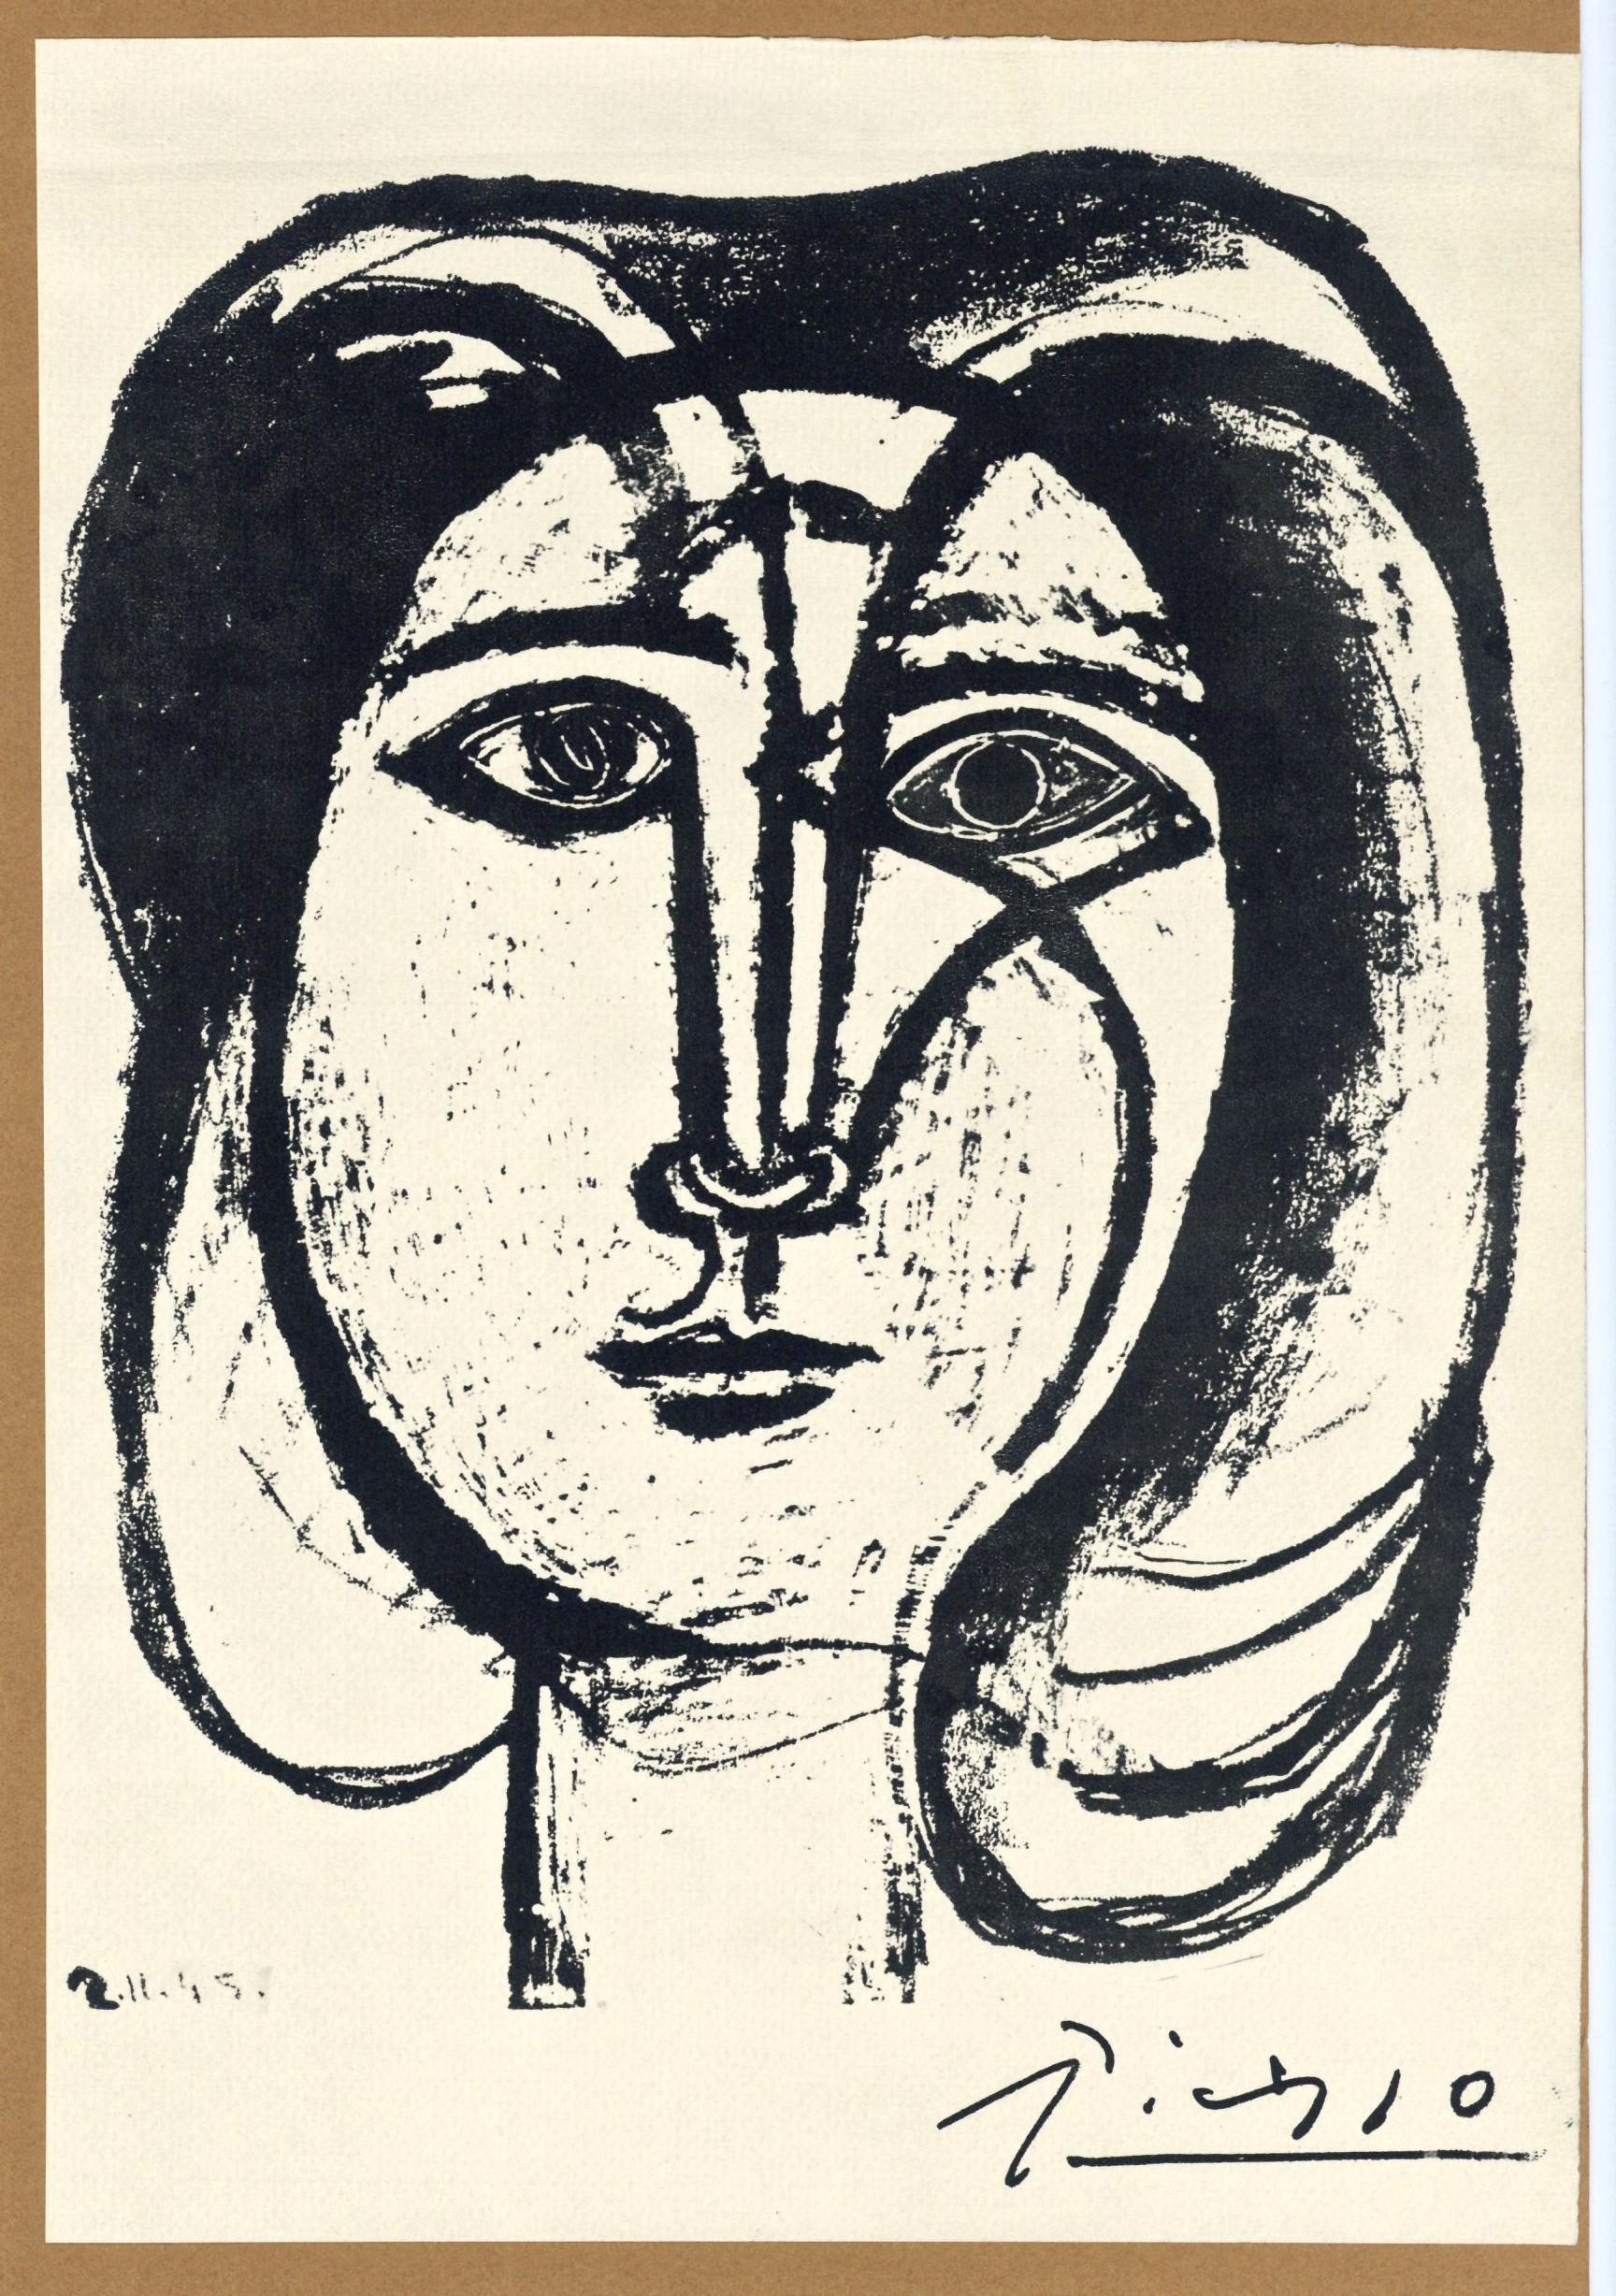 Traits, Tete de femme - affiche de lithographie et collage - Print de (after) Pablo Picasso